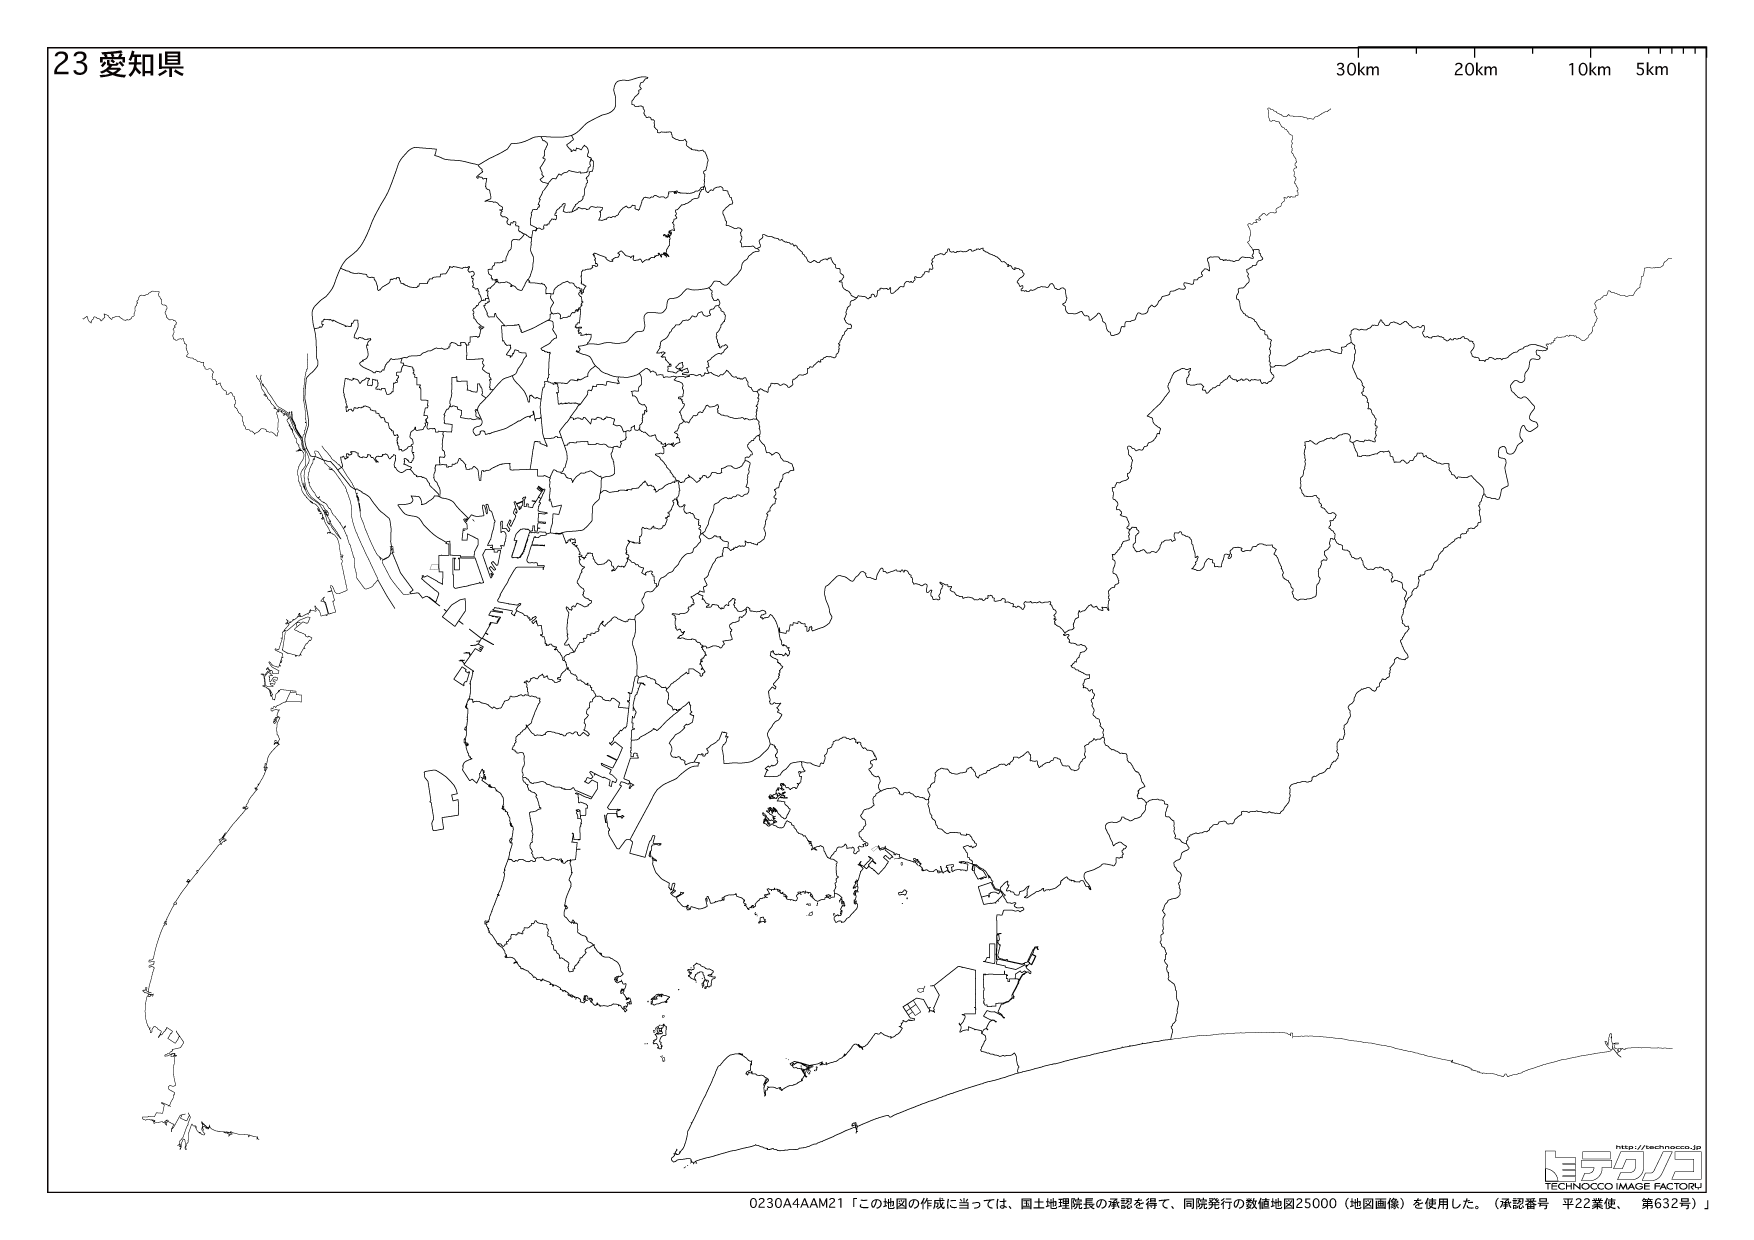 愛知県の白地図と市町村の合併情報